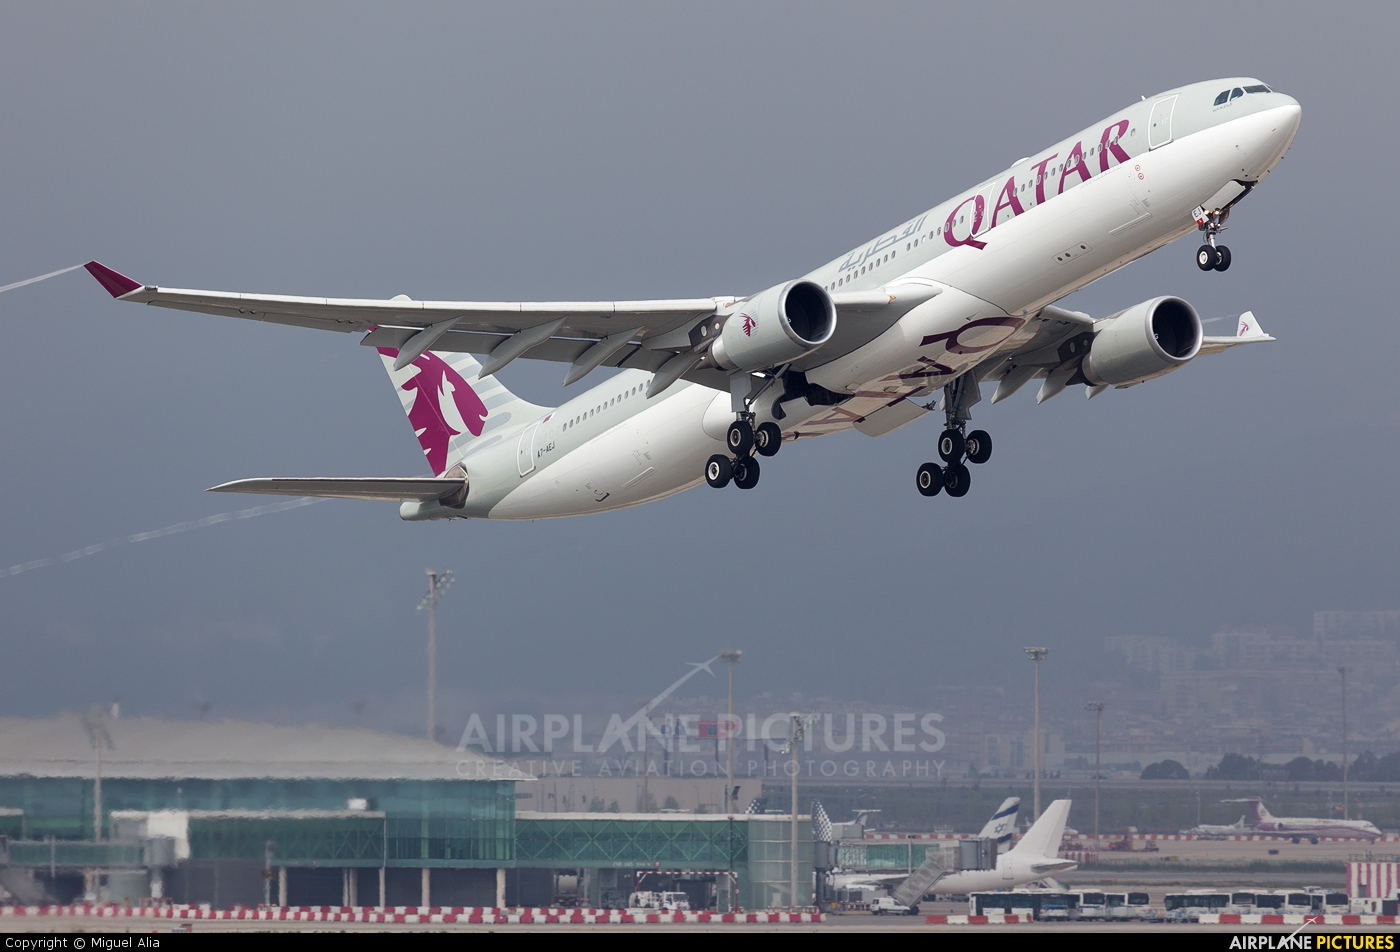 Qatar Airways A7-AEJ aircraft at Barcelona - El Prat